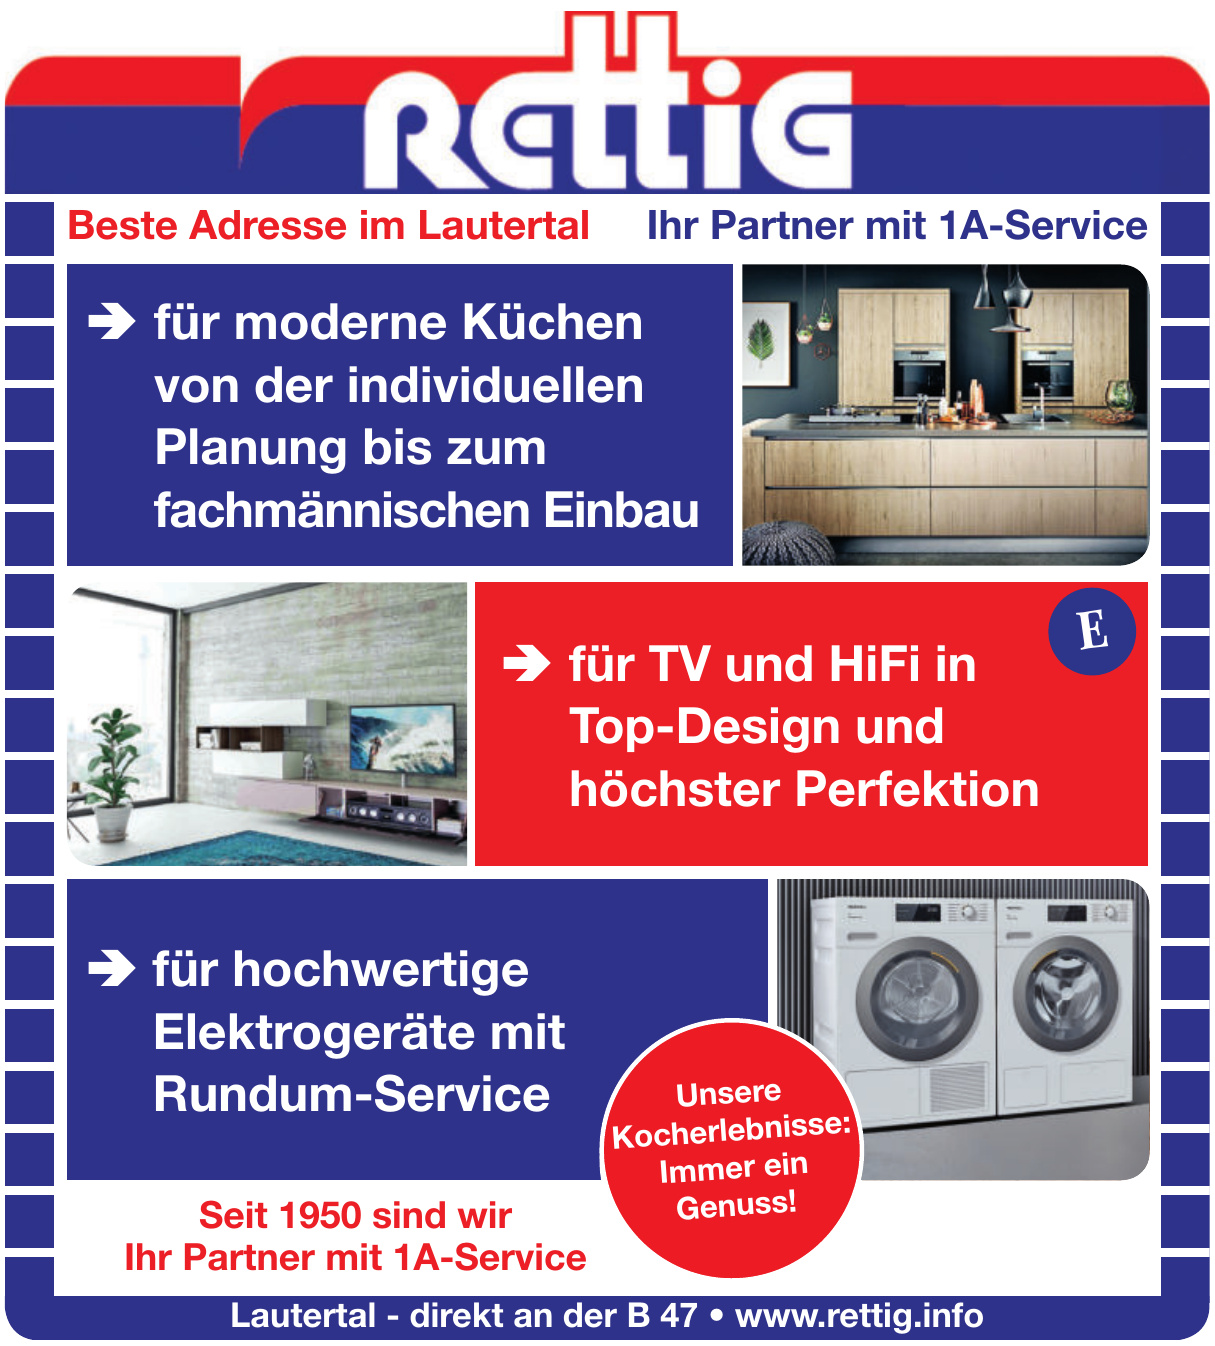 Rettig GmbH